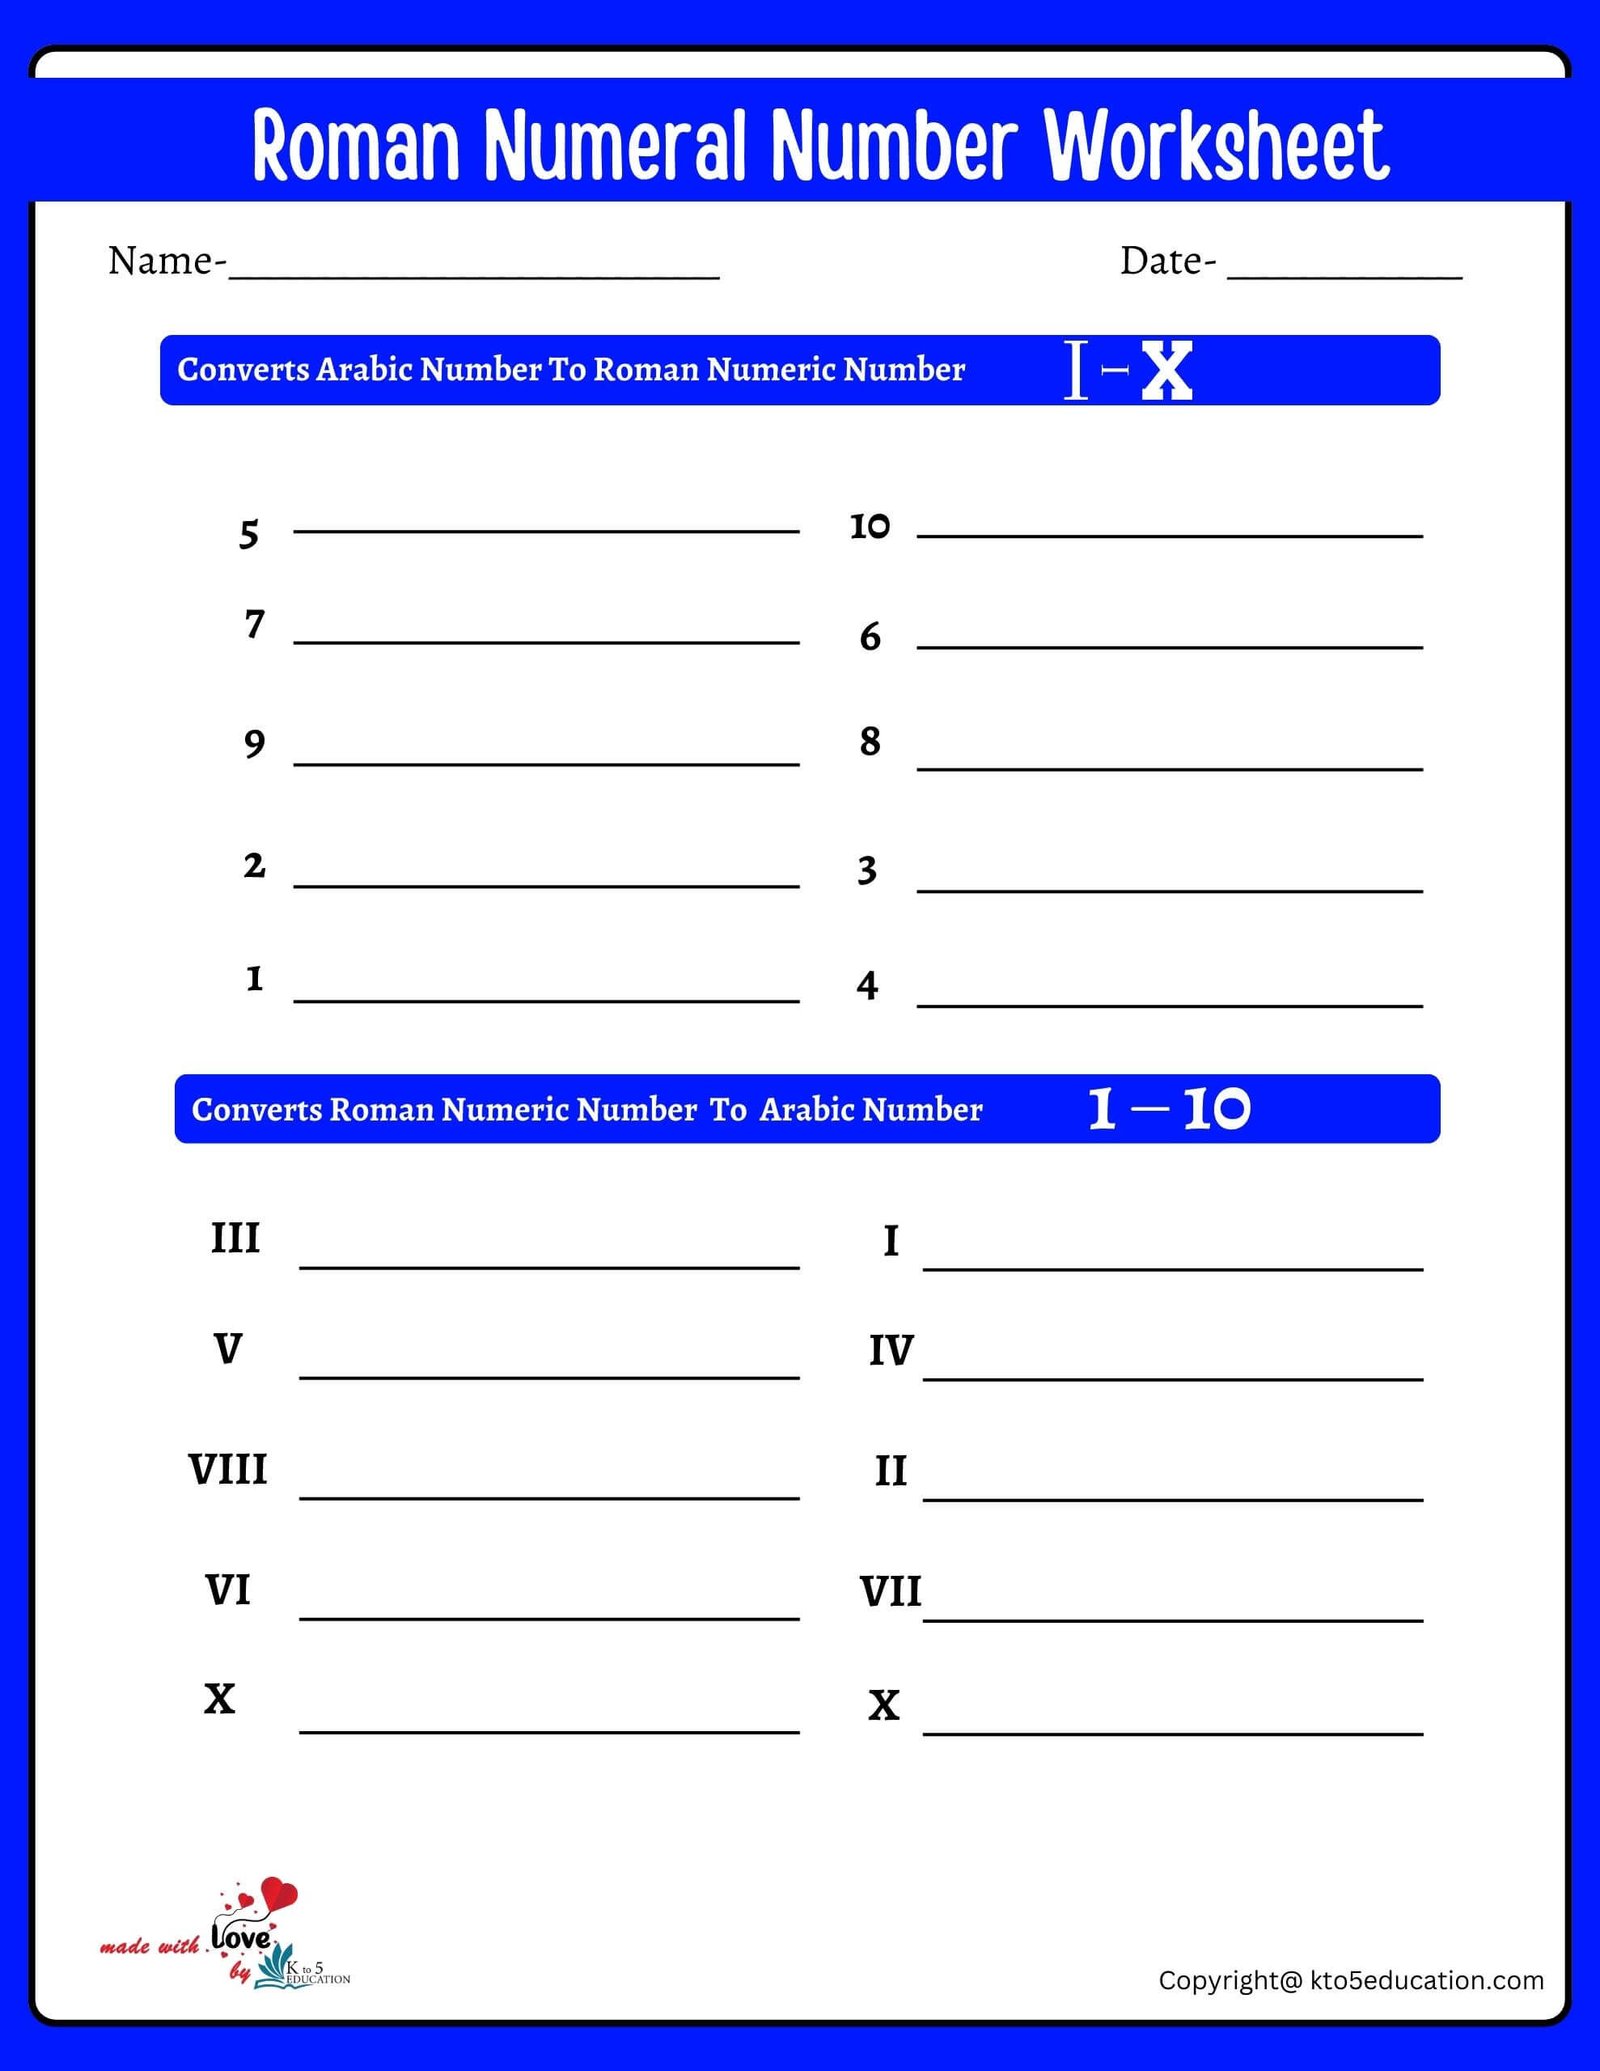 Roman Numeral Number Practice Worksheet